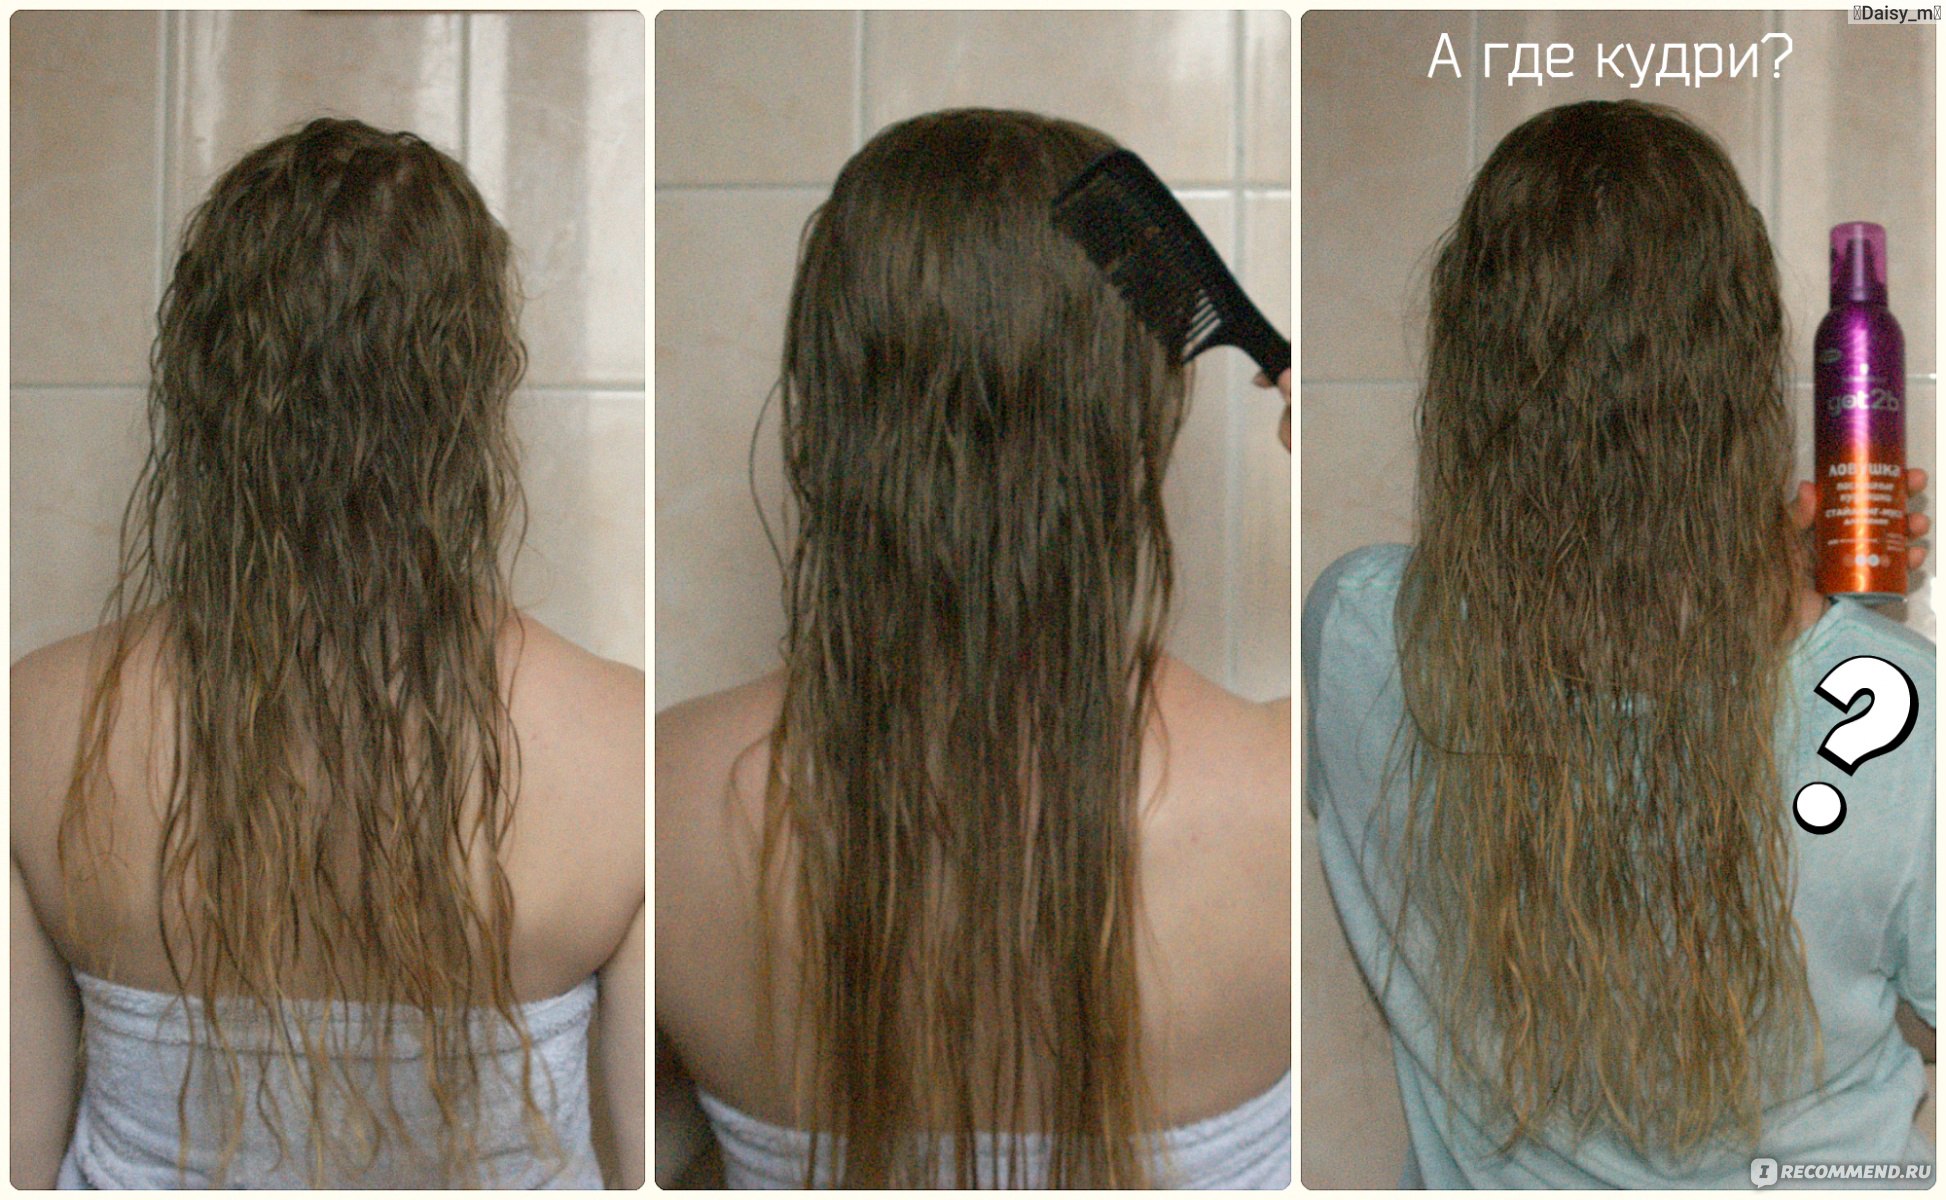 Биозавивка волос фото до и после (33 фото)